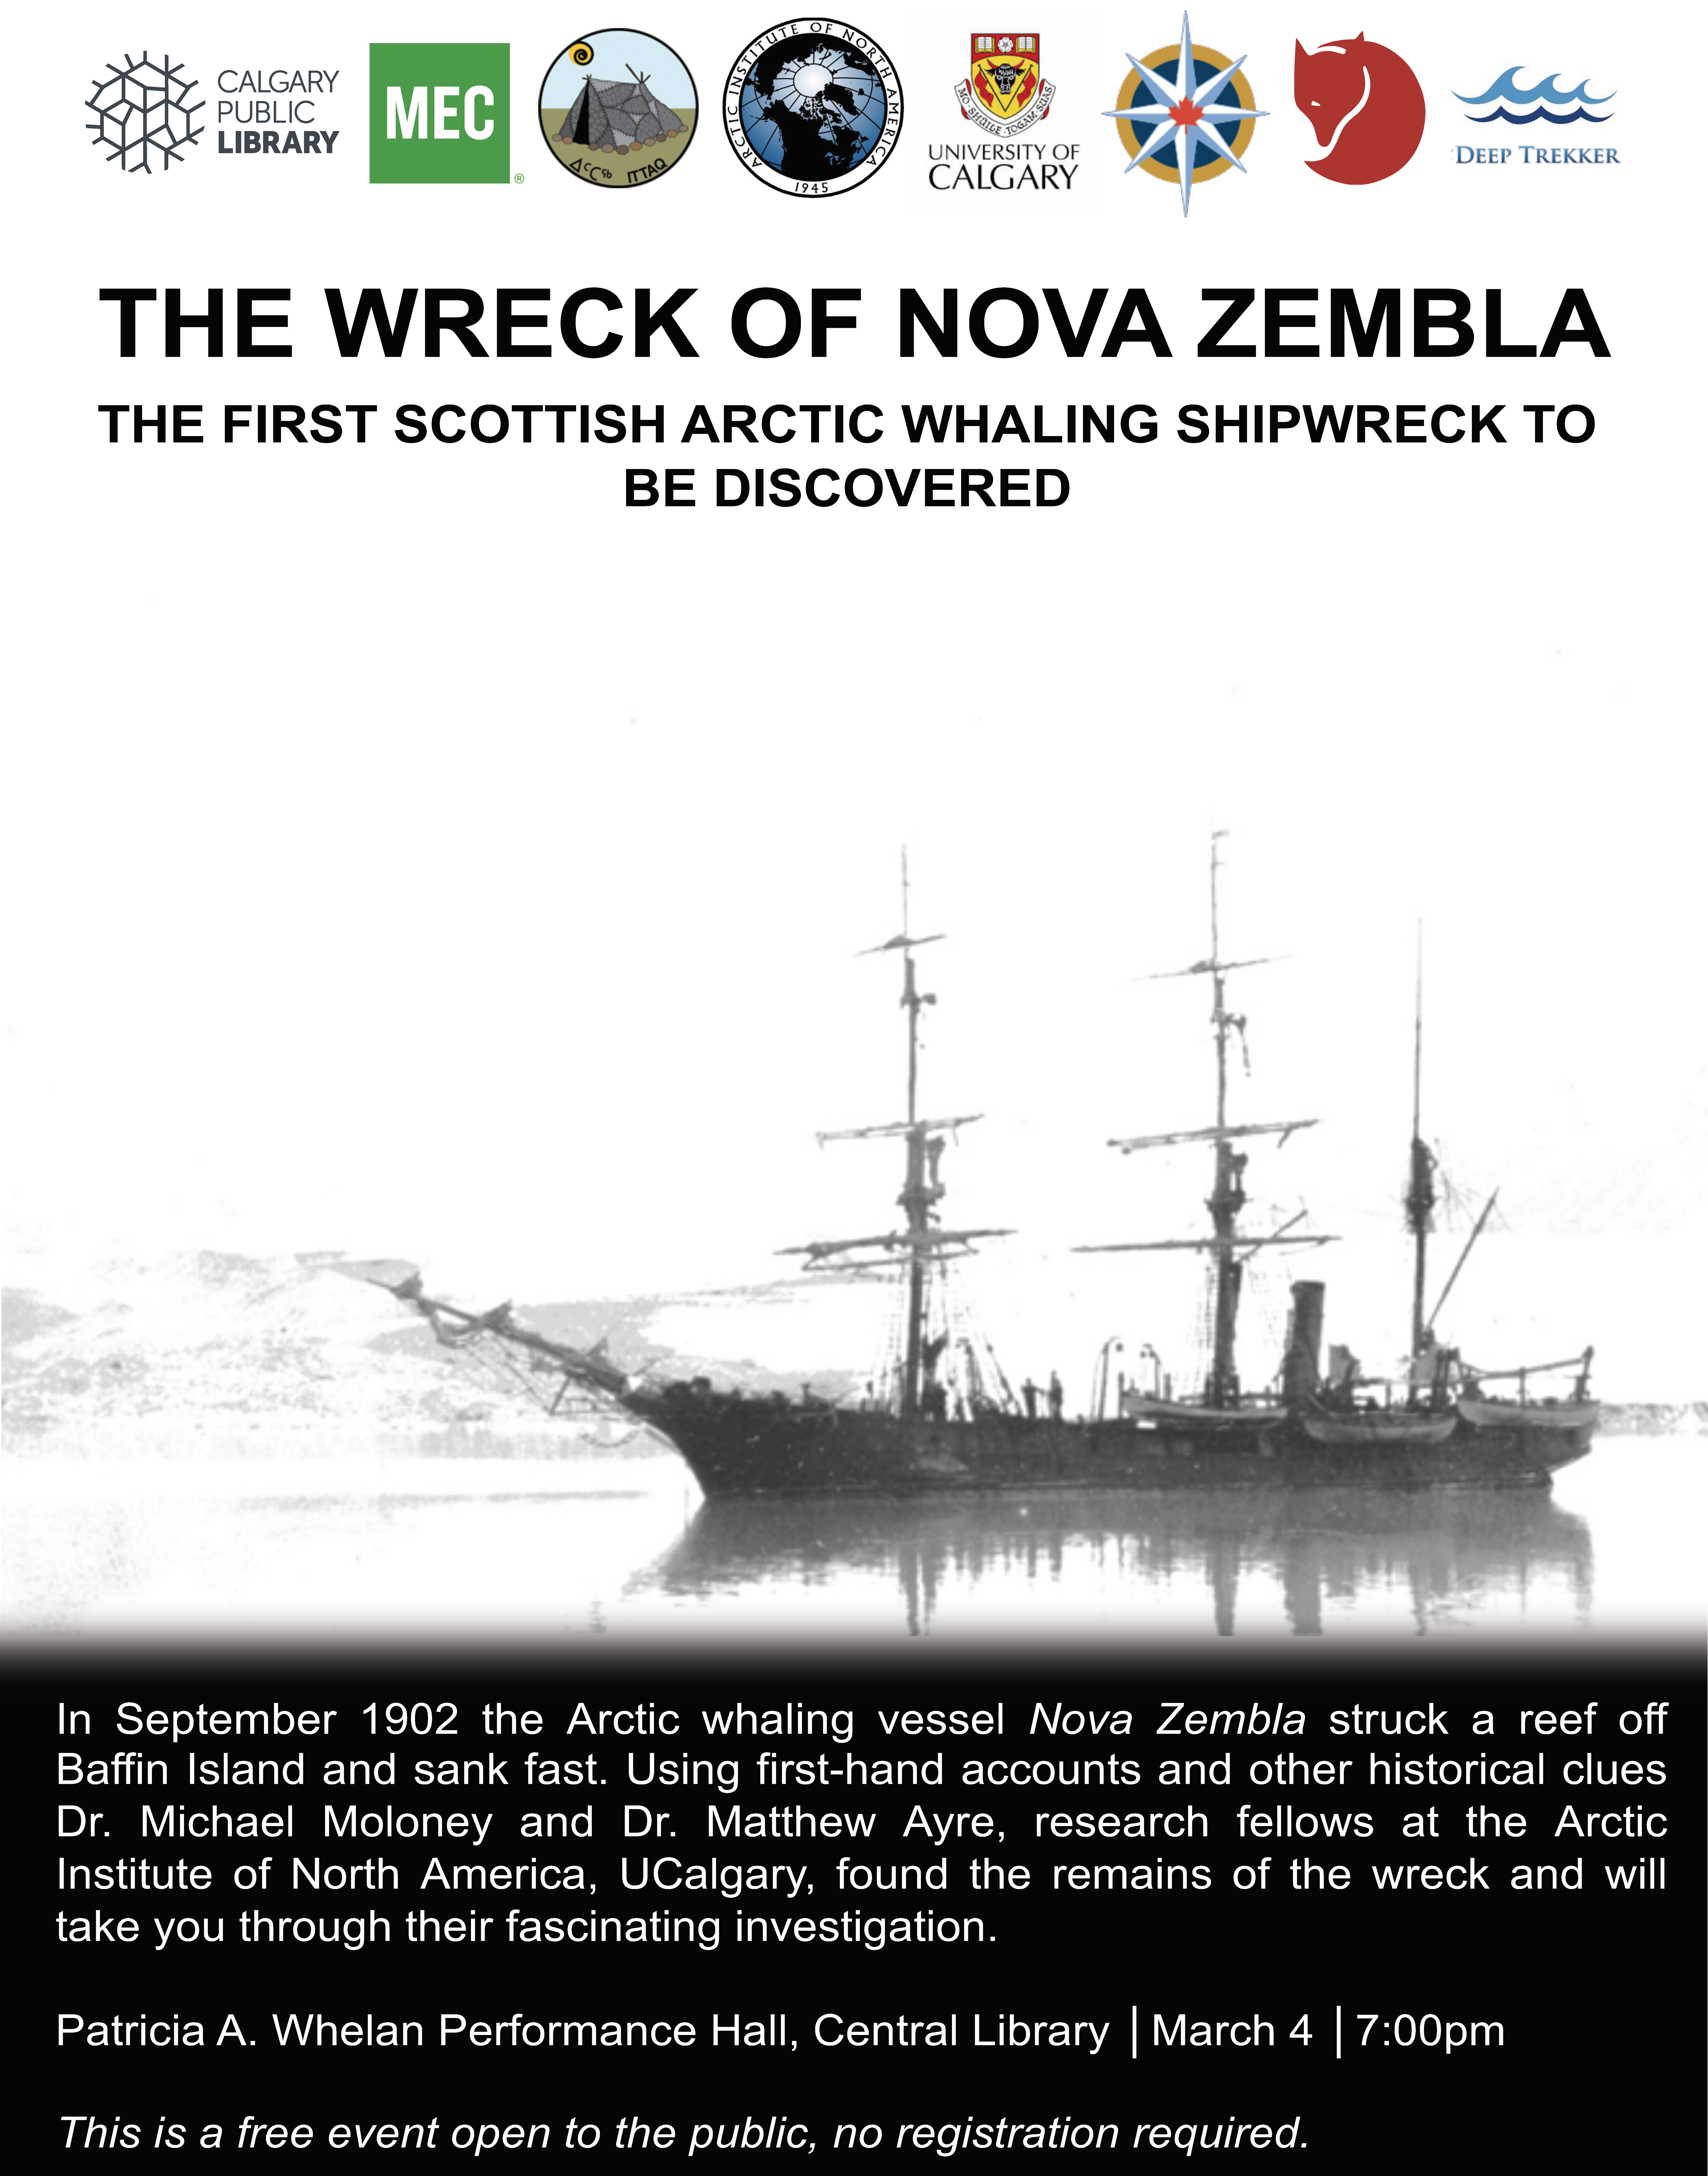 The Wreck of the Nova Zembla